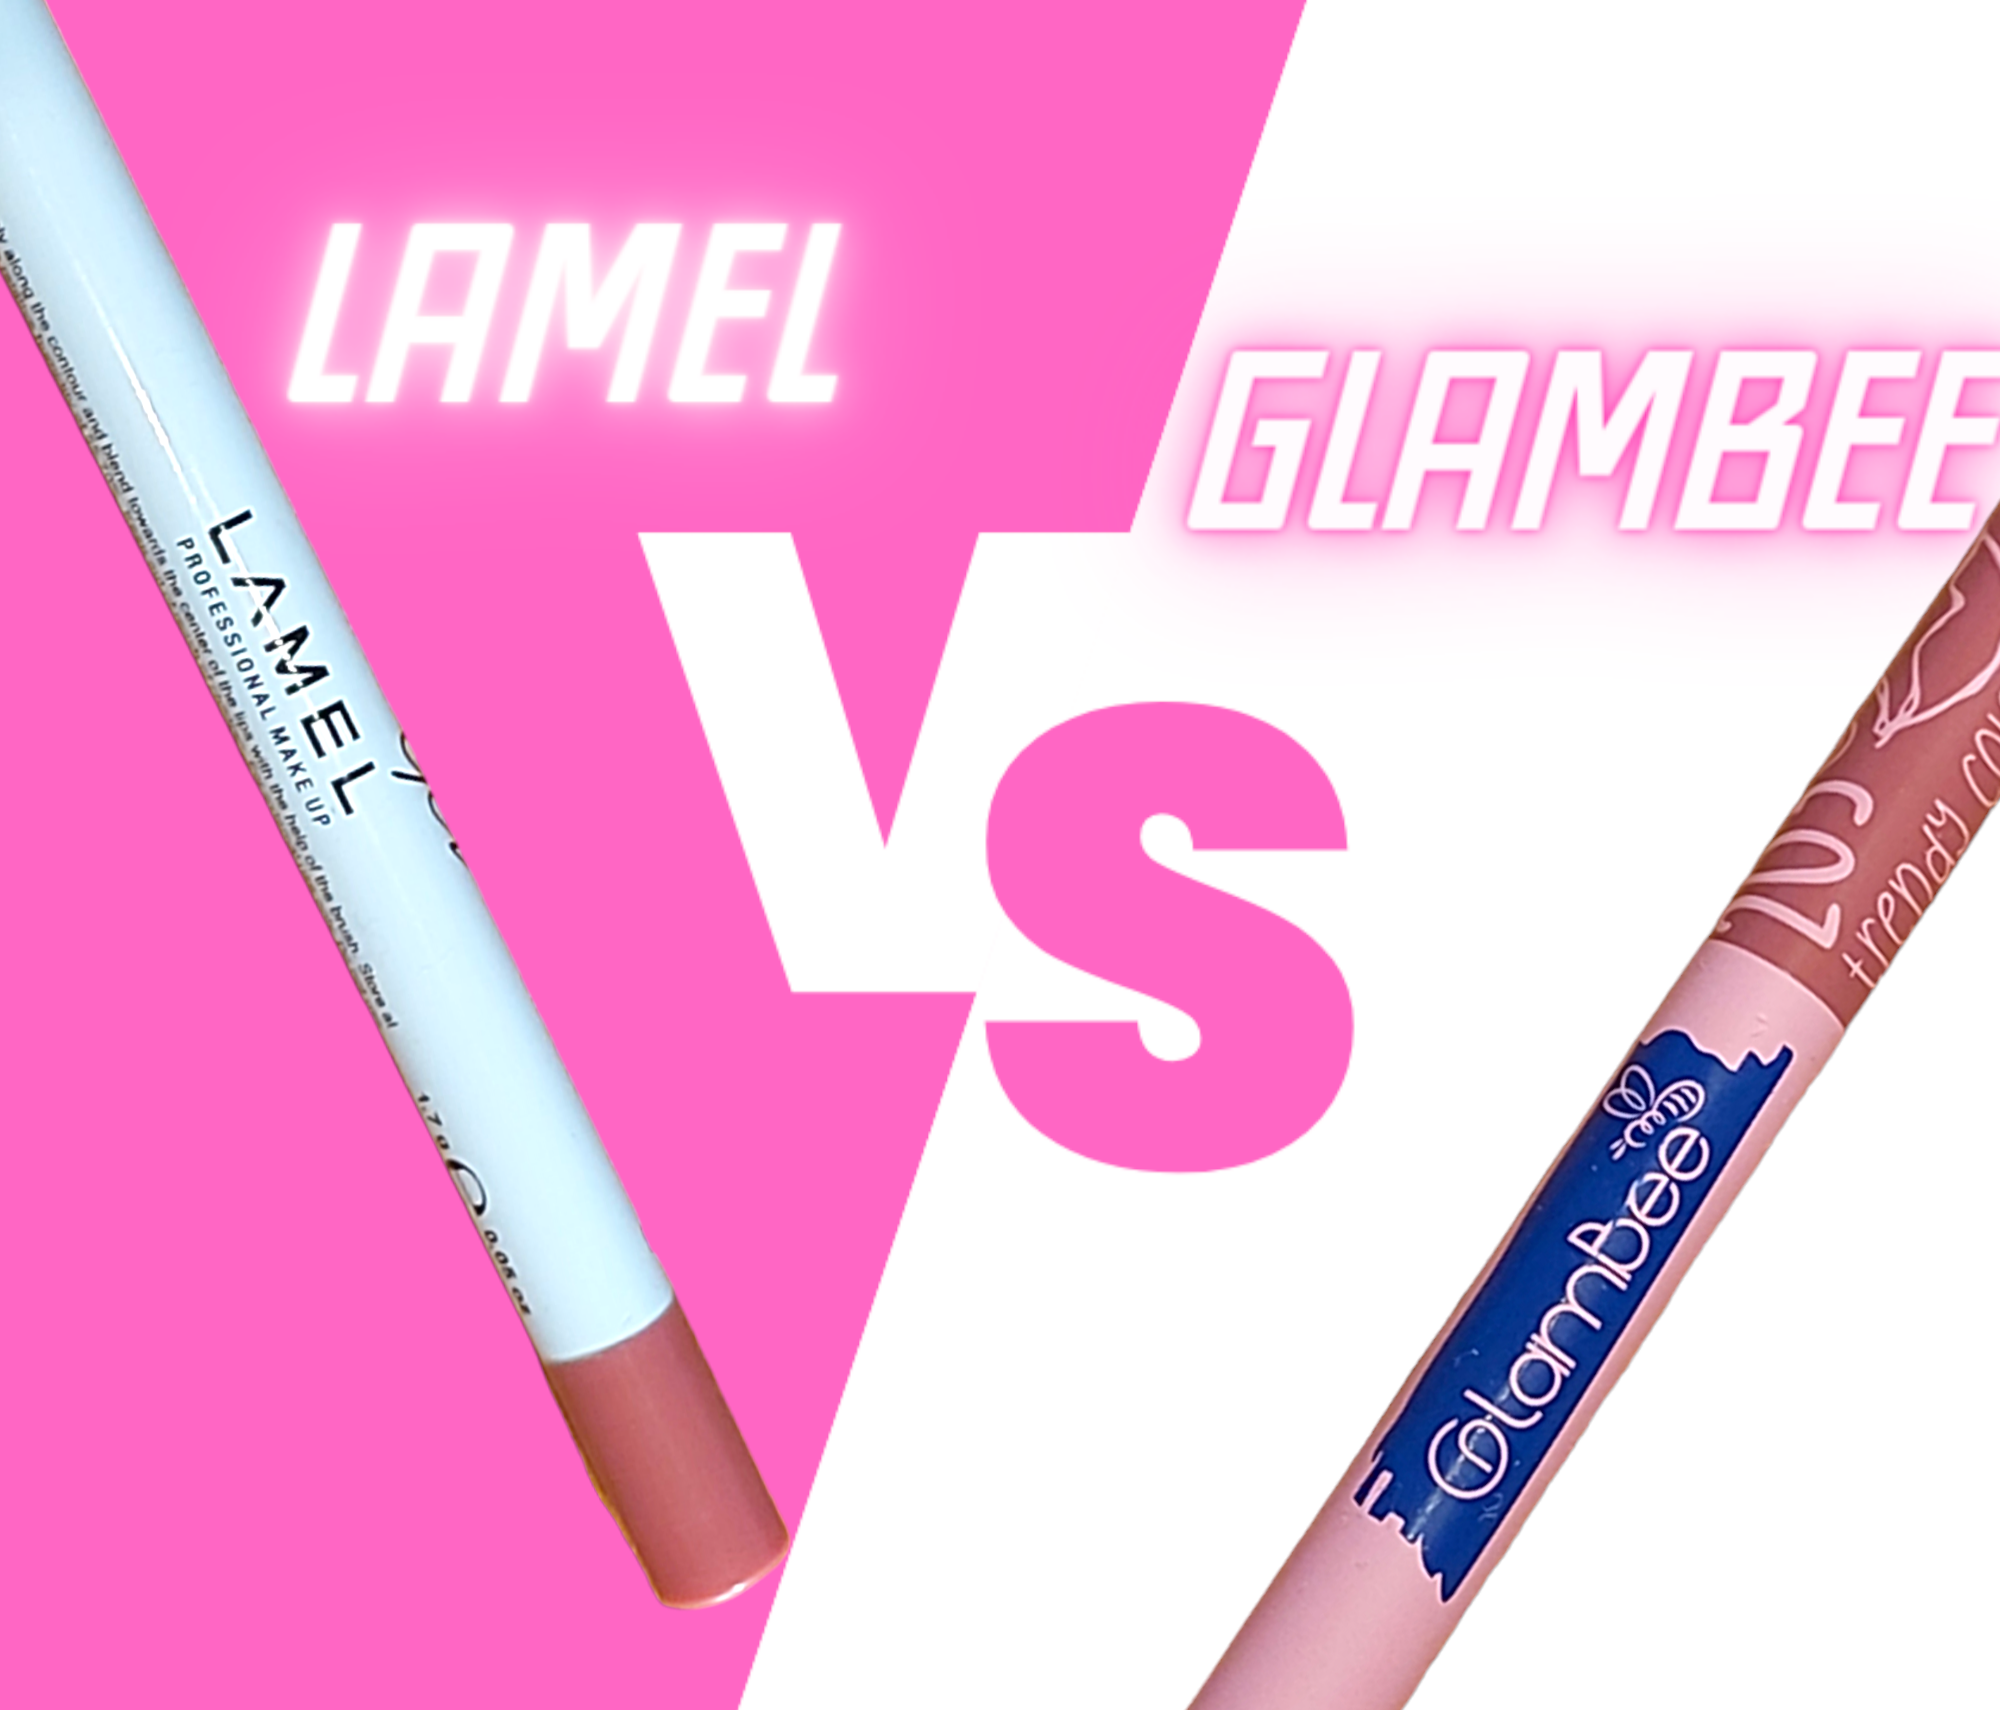 Lamel чи GlamBee?